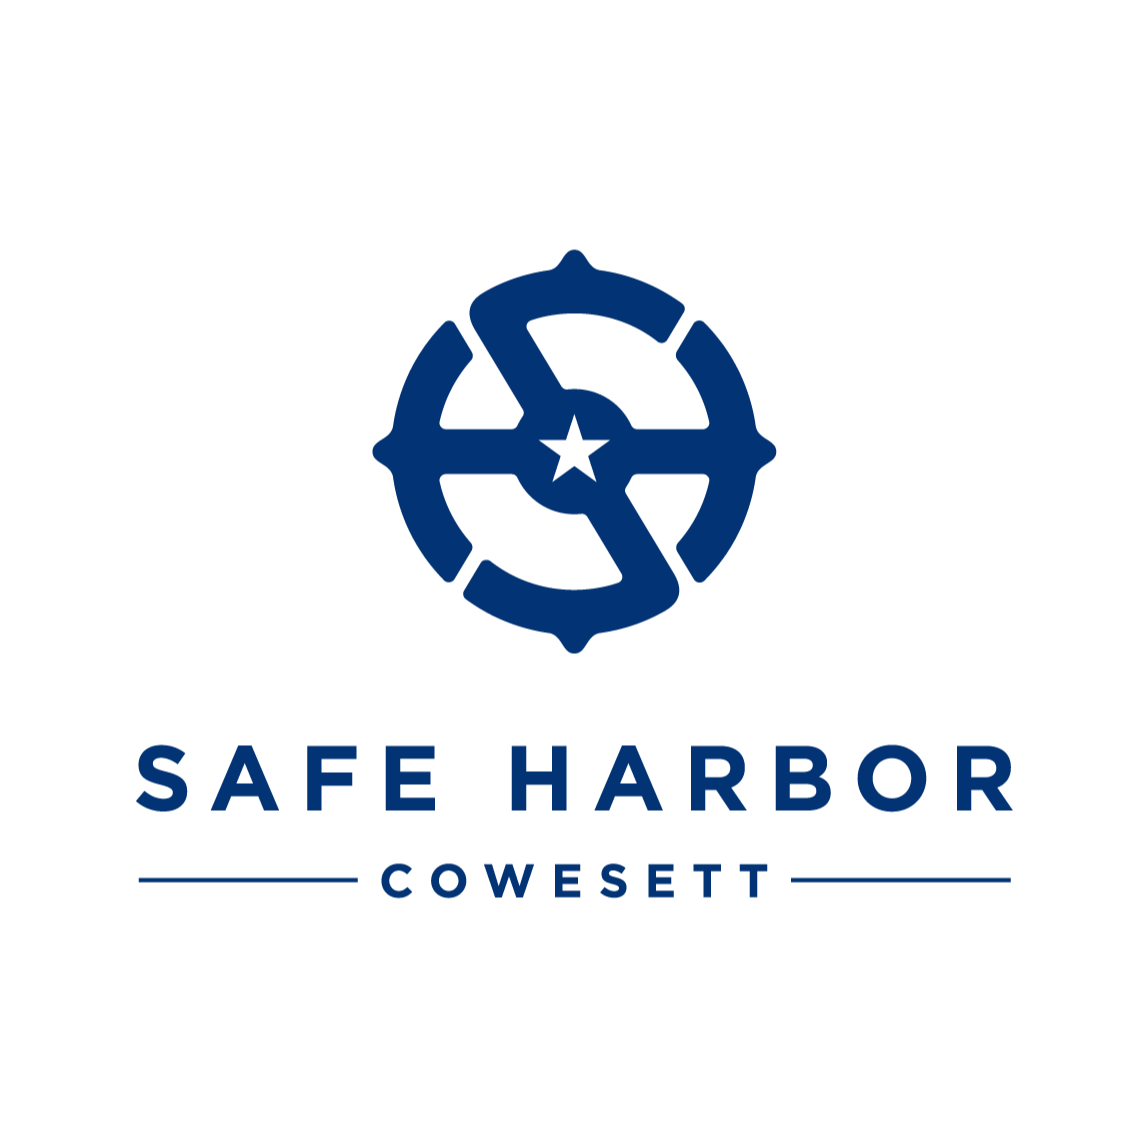 Safe Harbor Cowesett